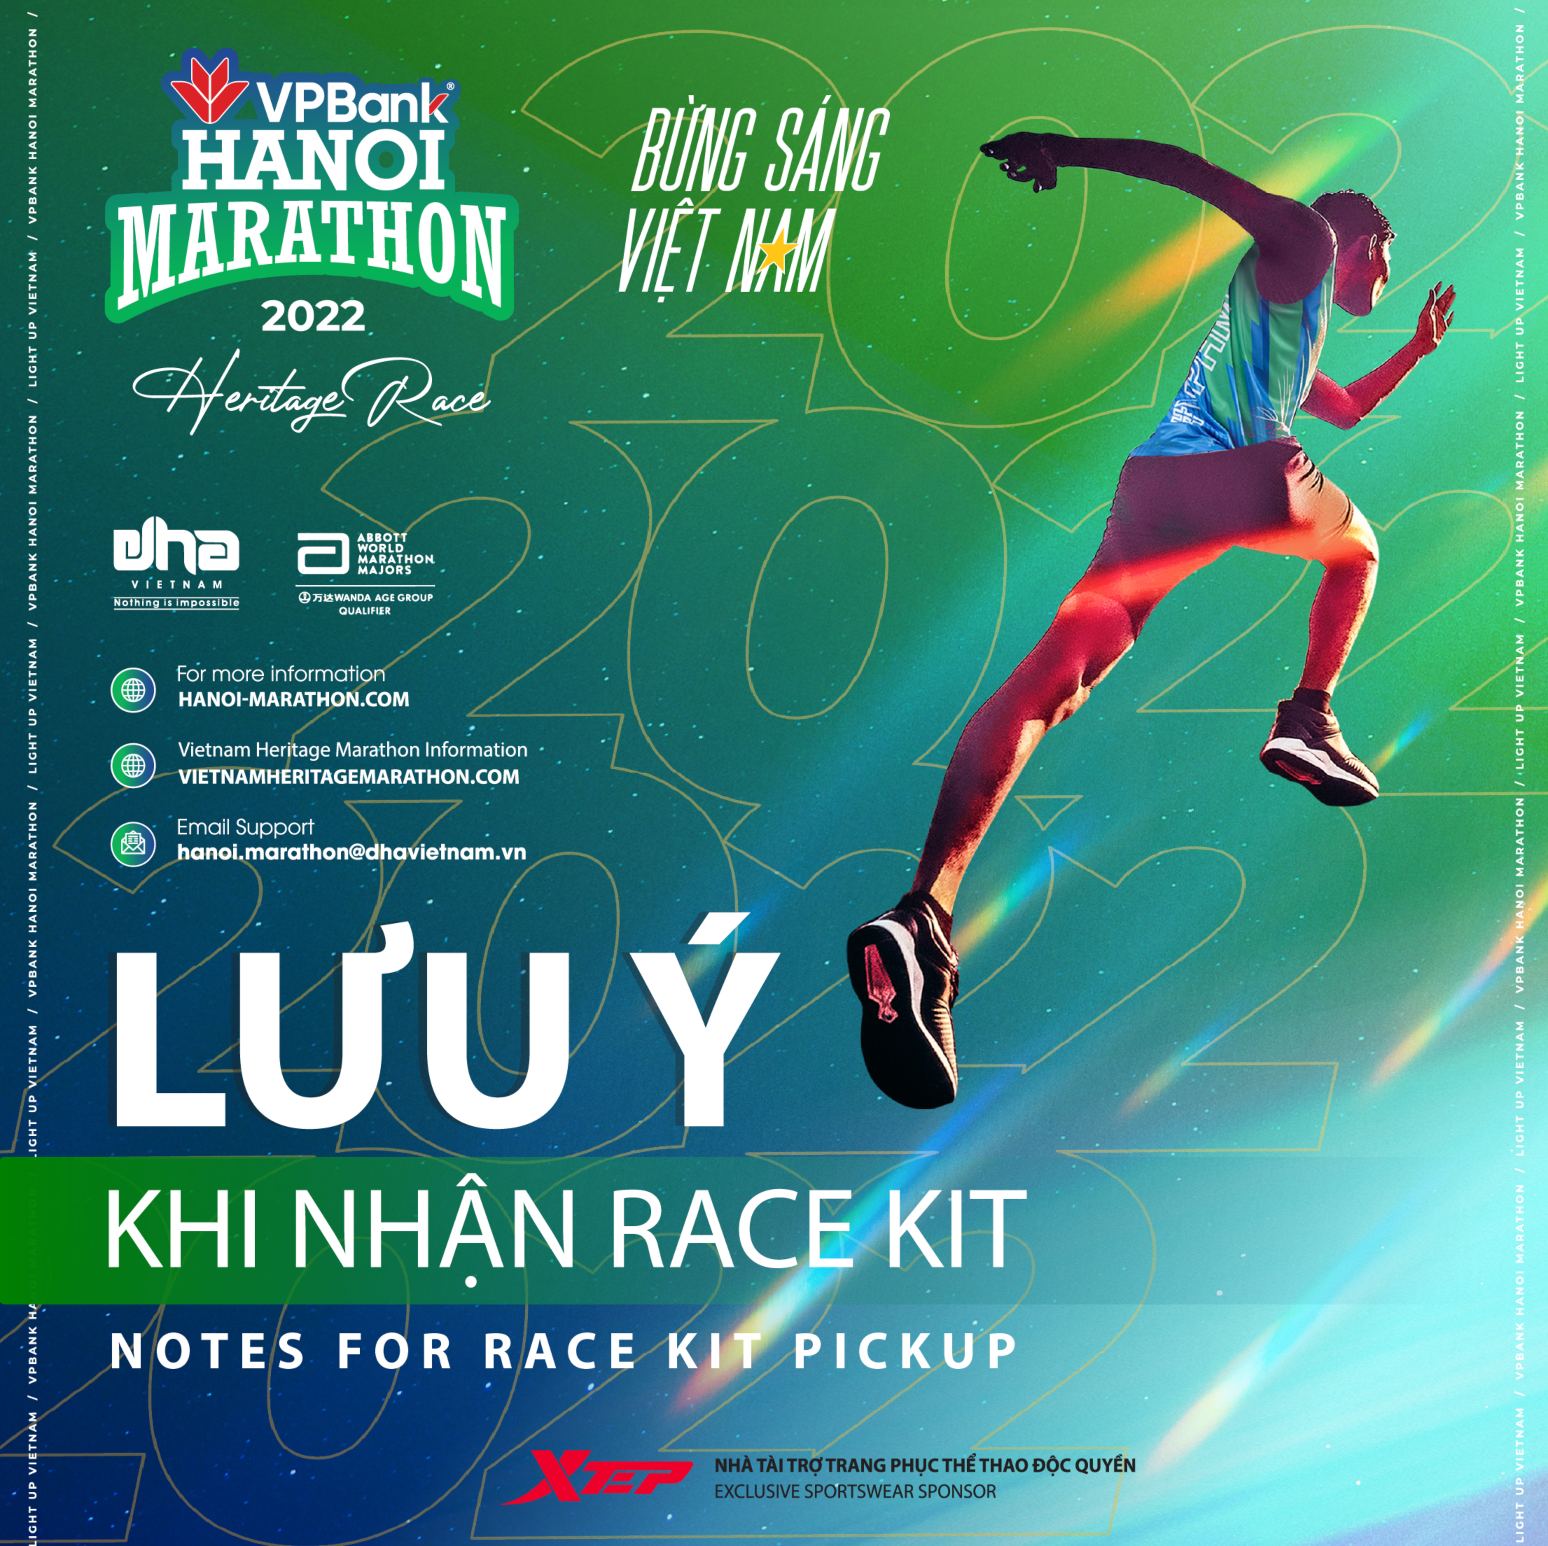 VPBank Hanoi Marathon 2022: Lưu Ý Khi Nhận Race Kit